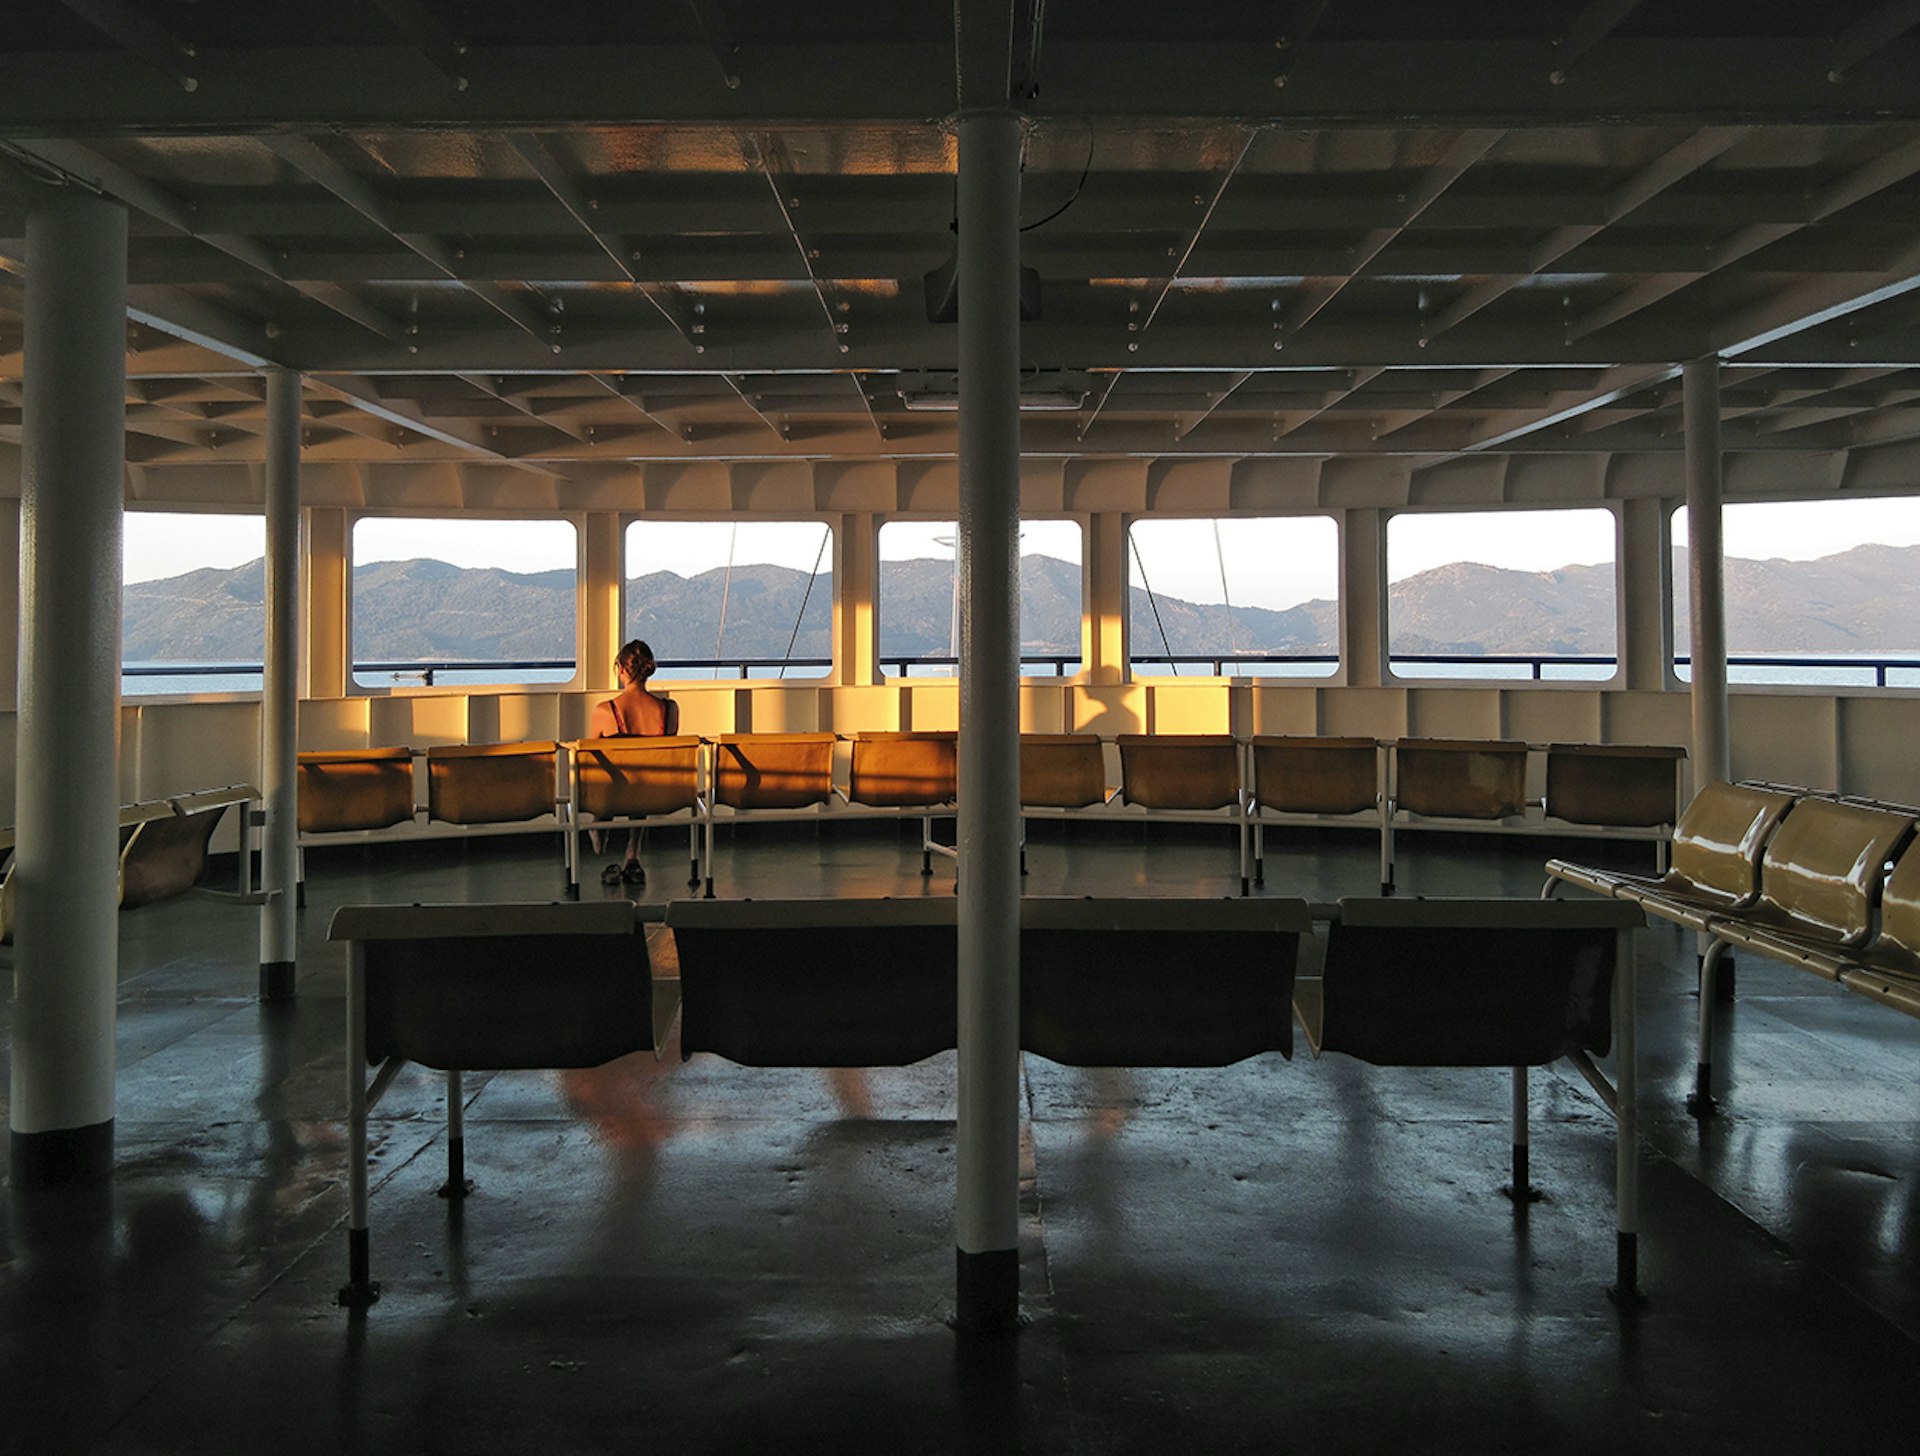 Ferry, Croatie, 2011